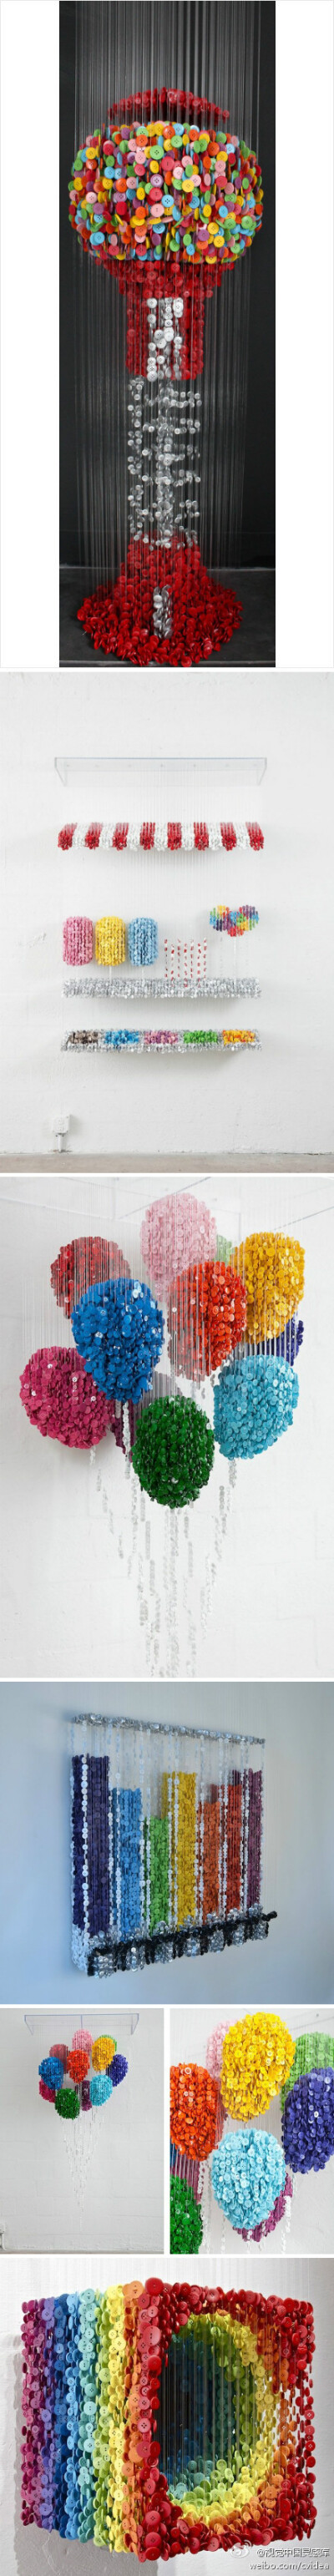 不可思议的艺术纽扣。在艺术家Augusto Esquivel眼中，纽扣成了气球，单车，消防栓，灭火器，甚至马桶，五颜六色的纽扣真是很有视觉美感。